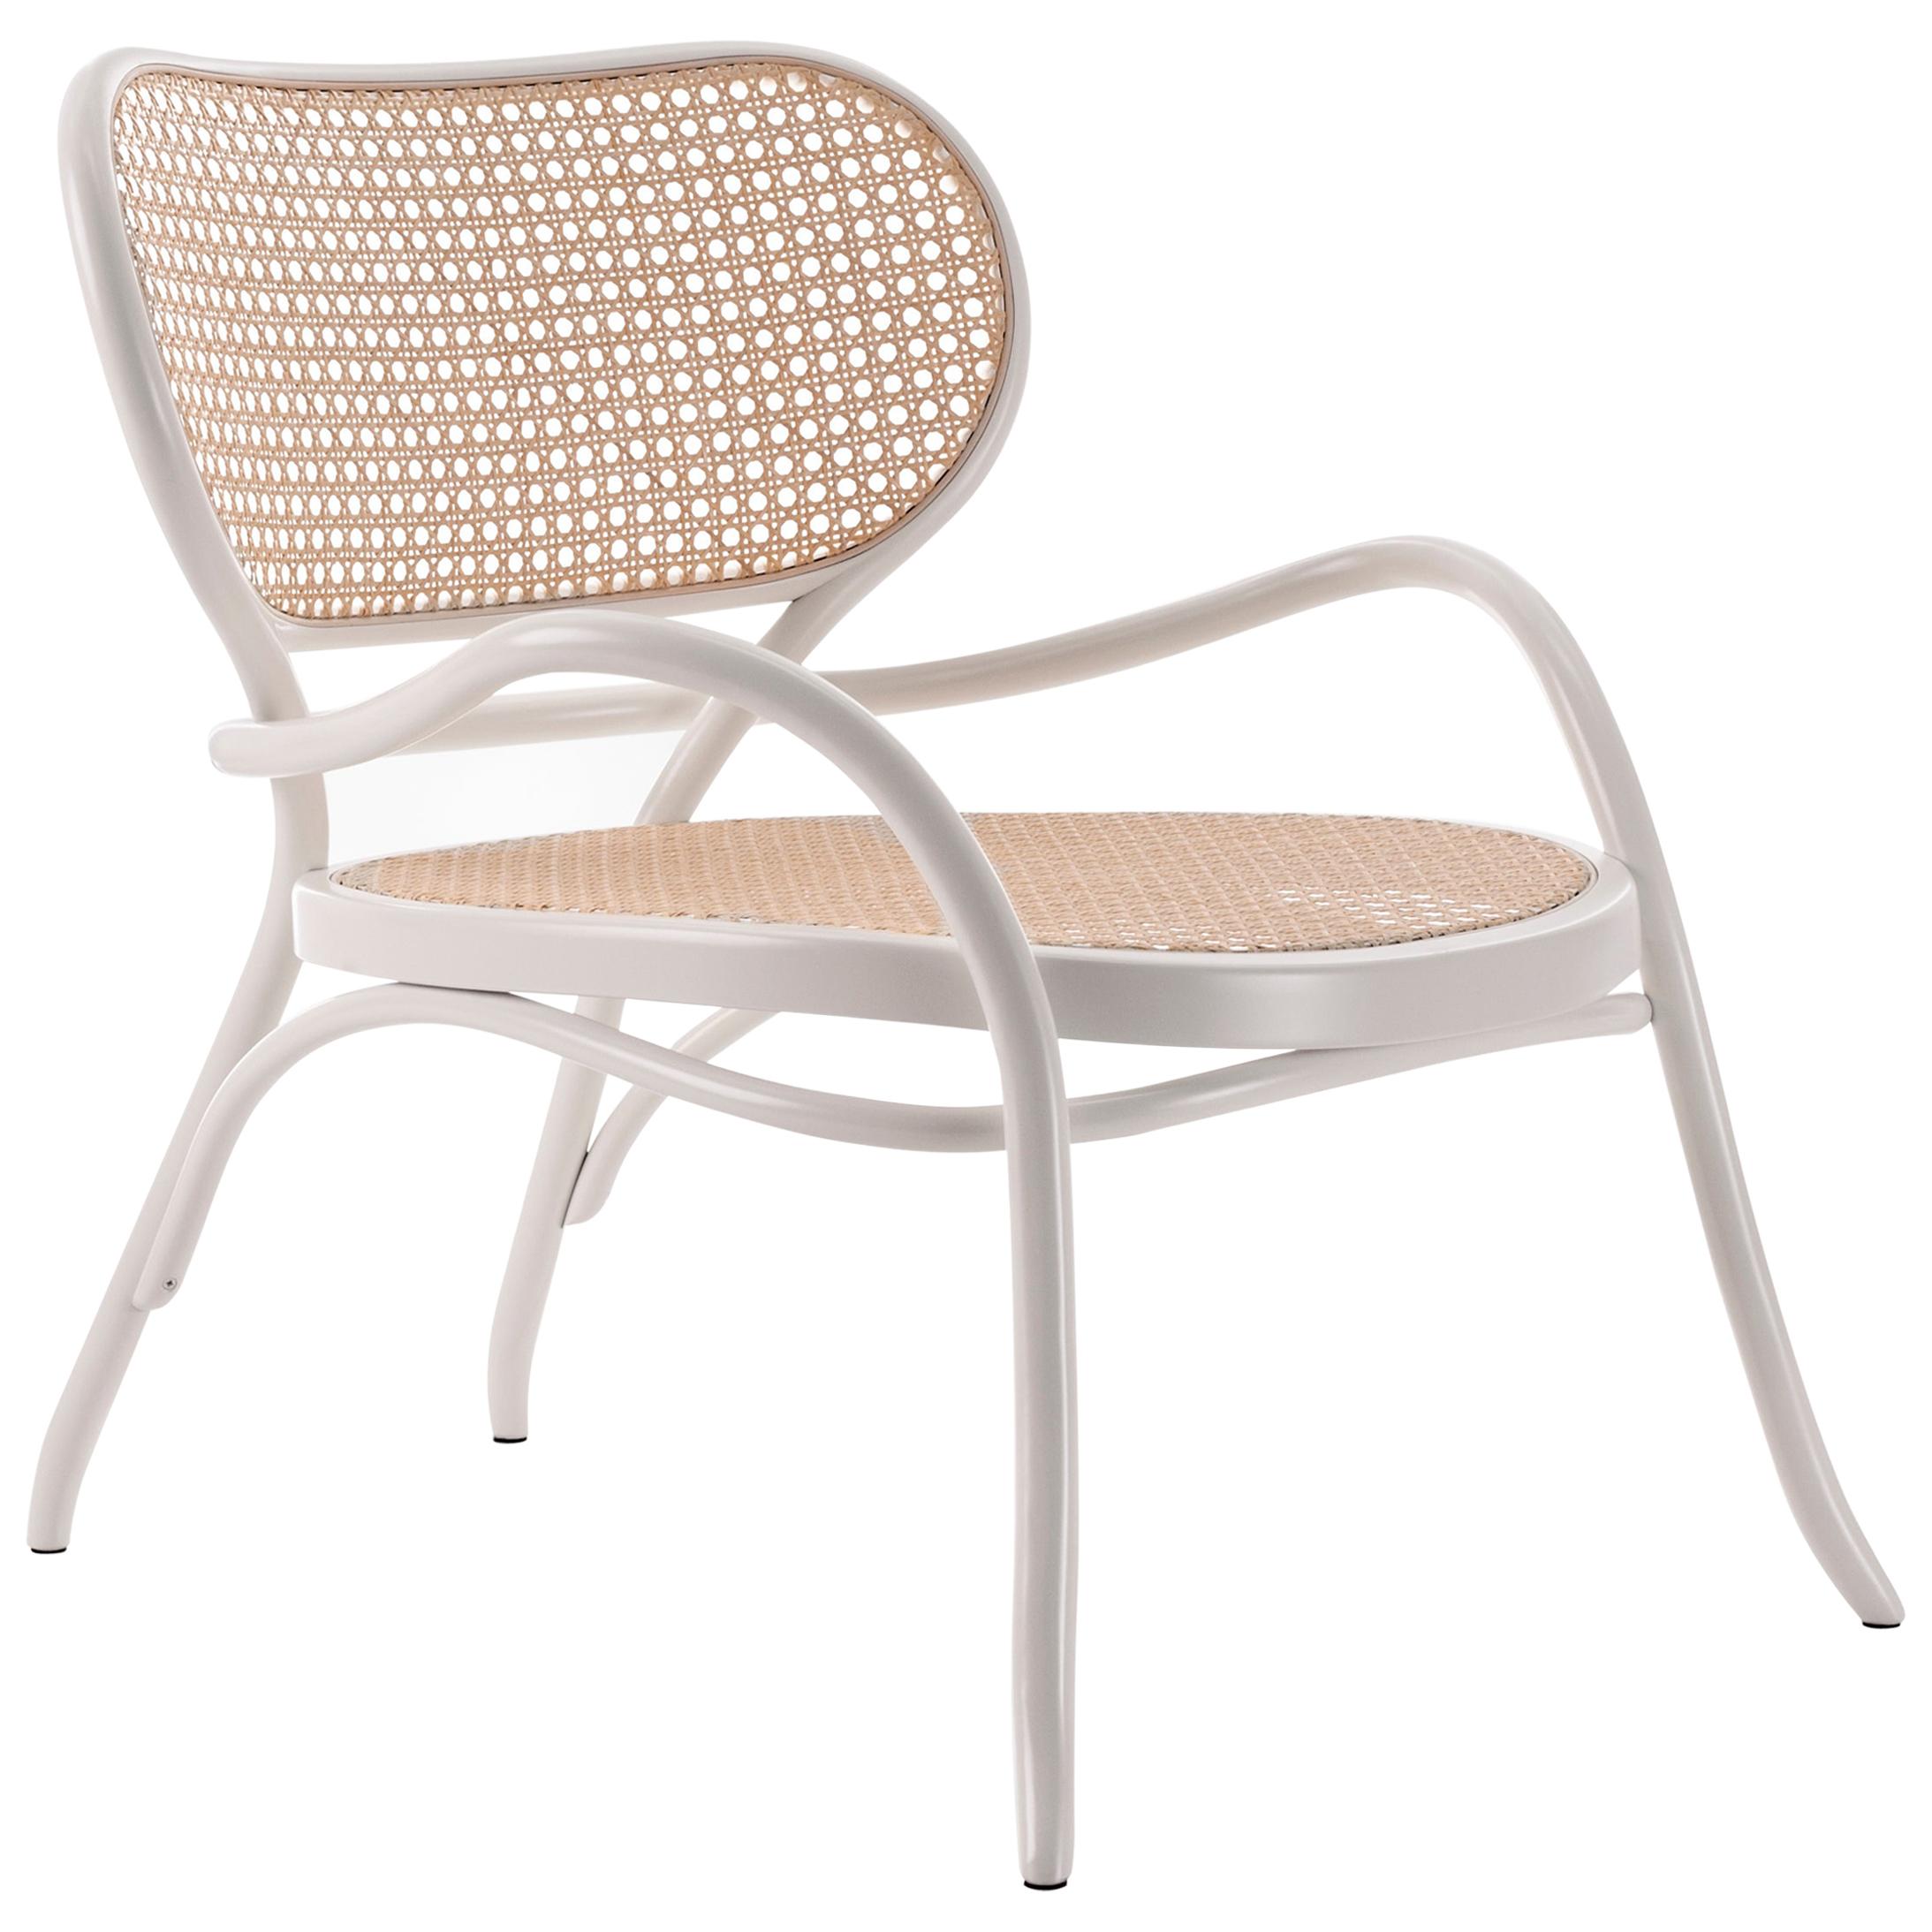 Gebrüder Thonet Vienna GmbH Lehnstuhl Lounge Chair in White with Woven Cane Seat